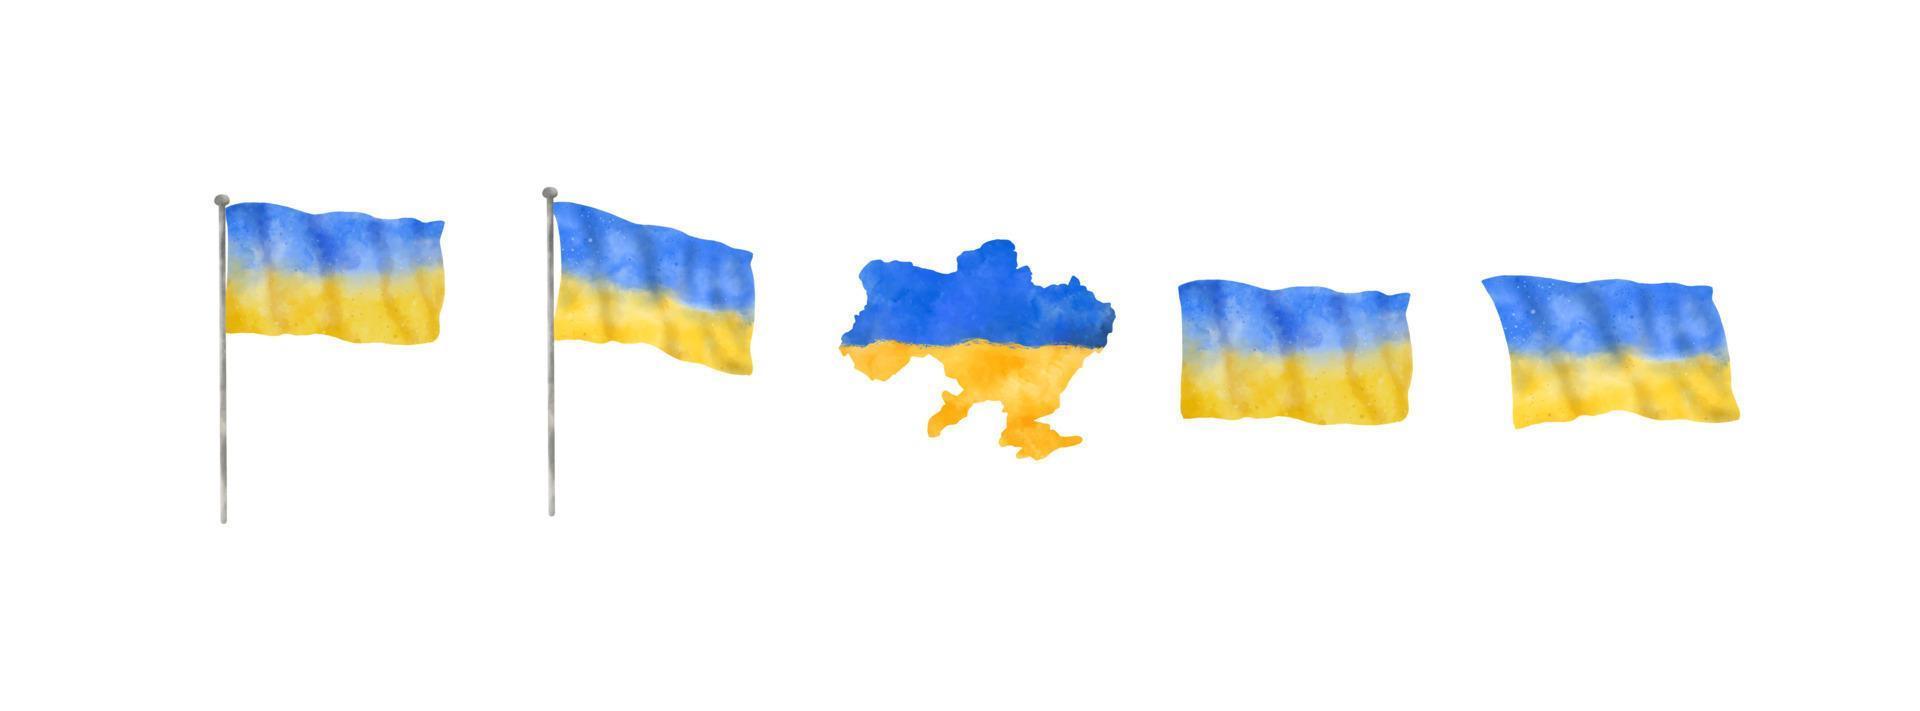 bandiera dell'ucraina e mappa del paese in stile acquerello. elementi decorativi per il concetto di pace in ucraina. illustrazione vettoriale